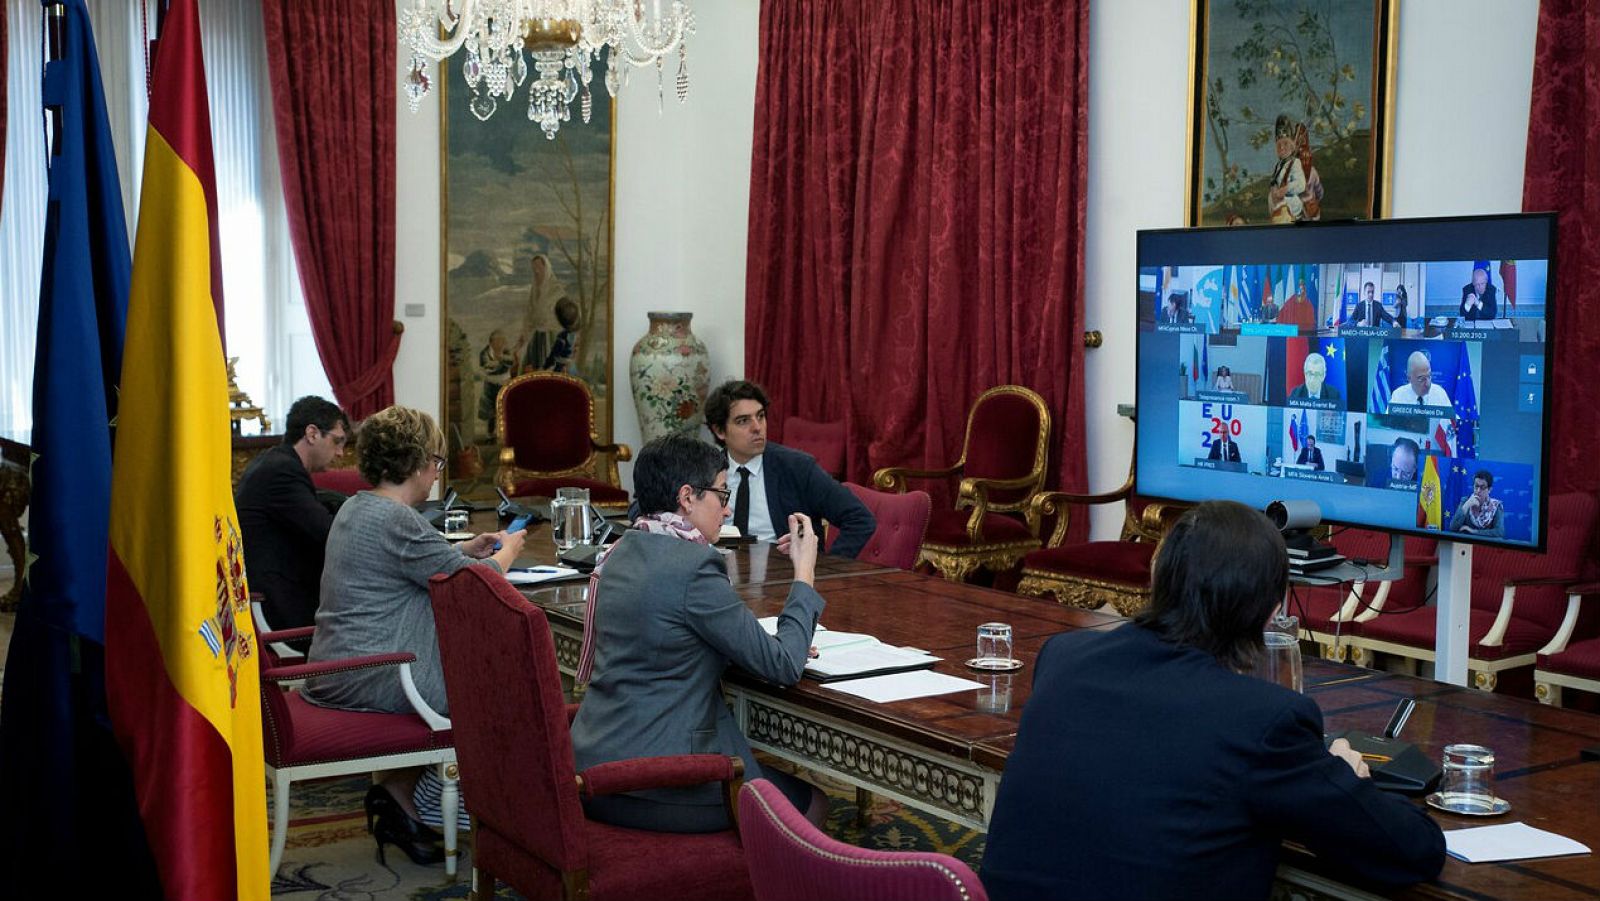 La Ministra de Asuntos Exteriores, Arancha González Laya, participa por videoconferencia en una reunión sobre 'Turismo y fronteras interiores', organizada por la República Federal de Alemania, con países de la Unión Europea a fin de consensuar un lev